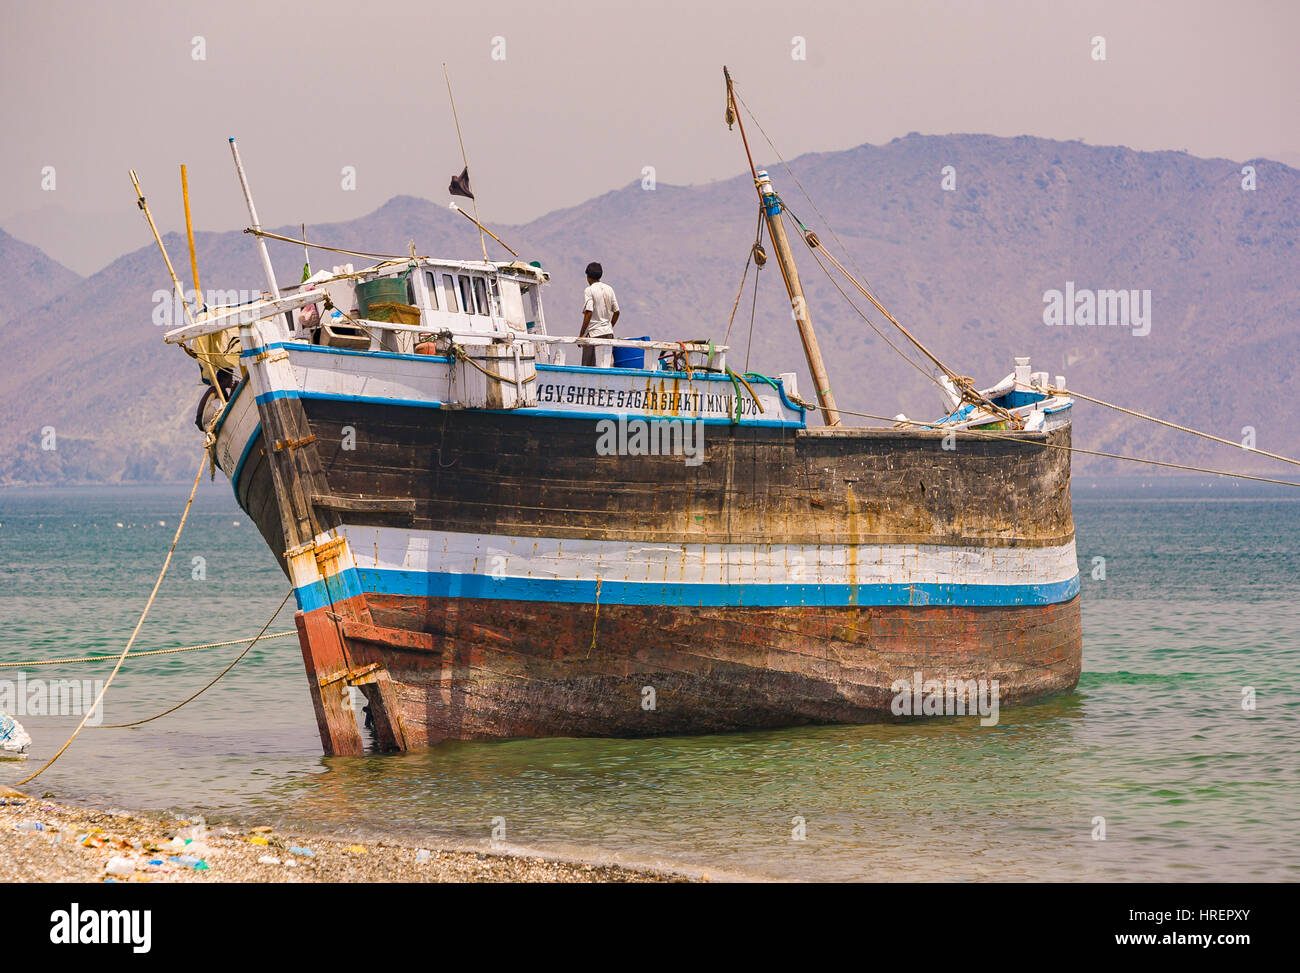 FUJAIRAH, Vereinigte Arabische Emirate - Holzschiff am Ufer. Stockfoto